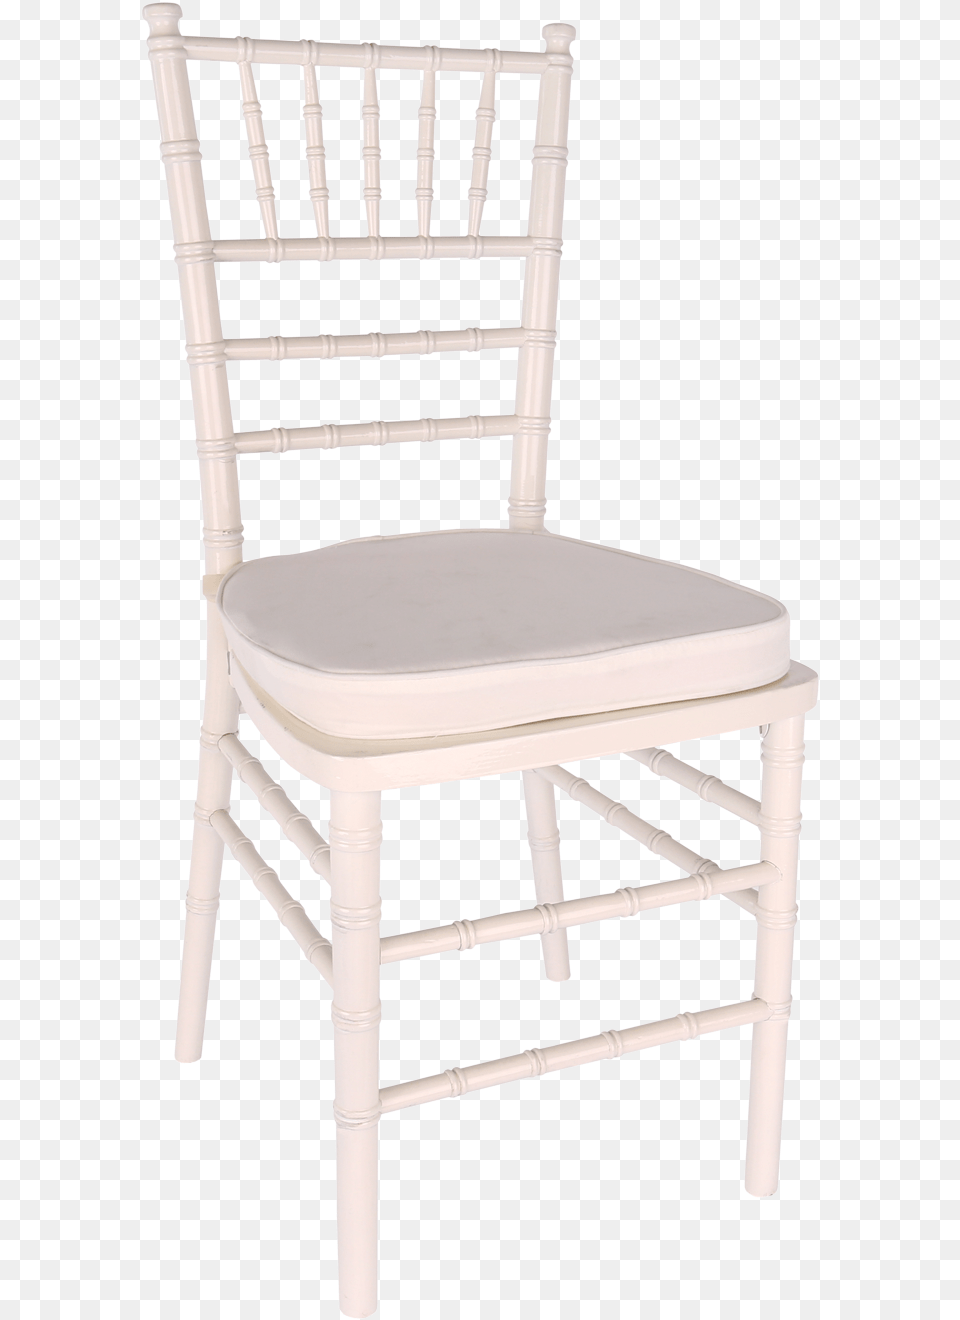 Chair White Chiavari With Cushion White Chiavari Chair With White Cushion, Furniture Free Png